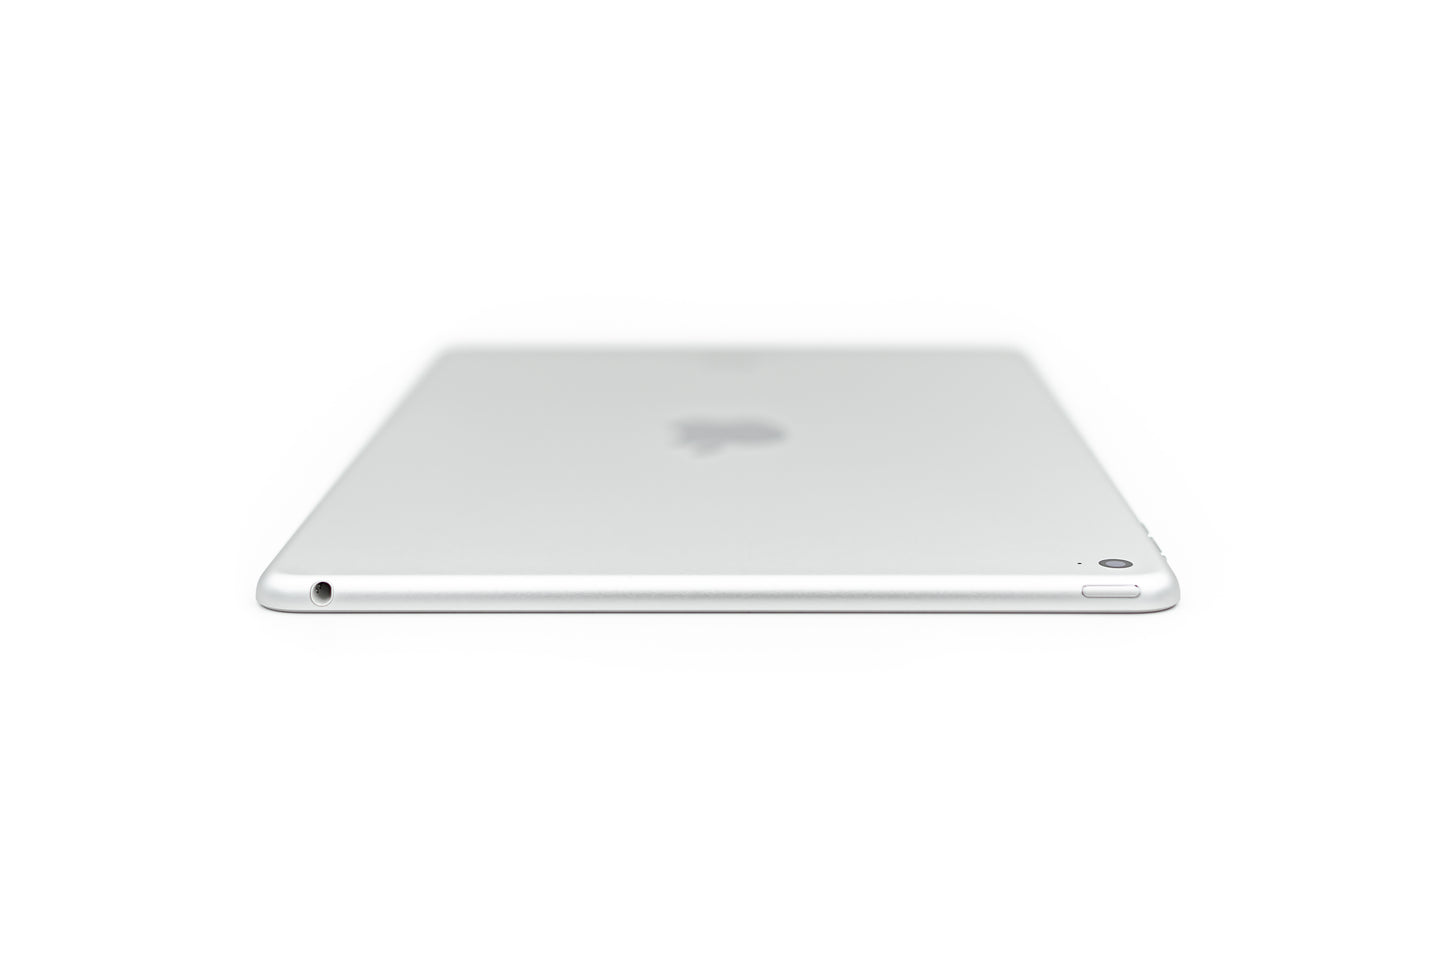 apple-2014-9.7-inch-ipad-air-2-a1566-silver/white-5